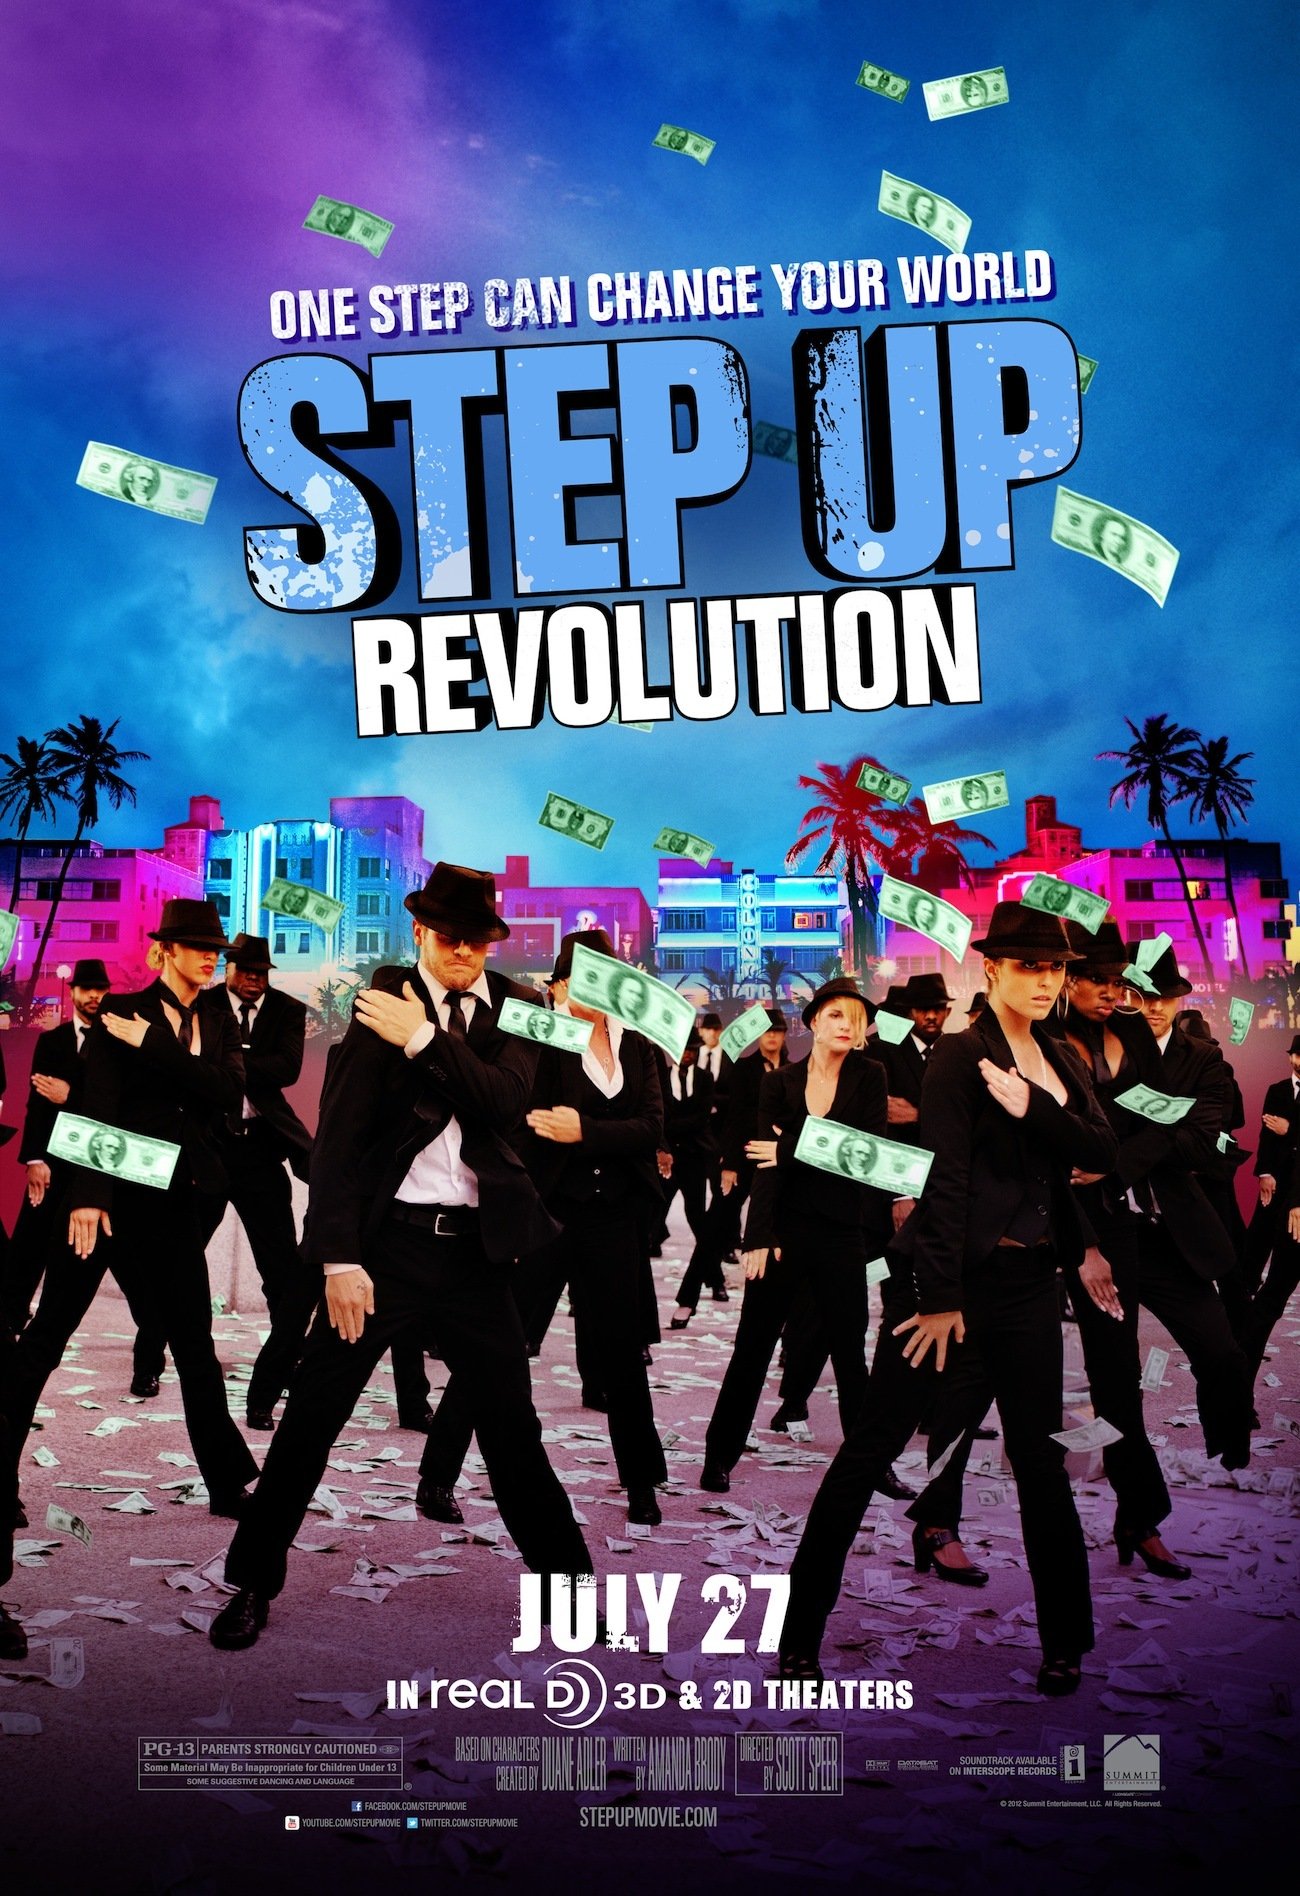 Step up песня. Шаг вперед 4 Постер. Шаг вперед 4 Step up Revolution 2012. Шаг вперед 4 (2012) Постер.